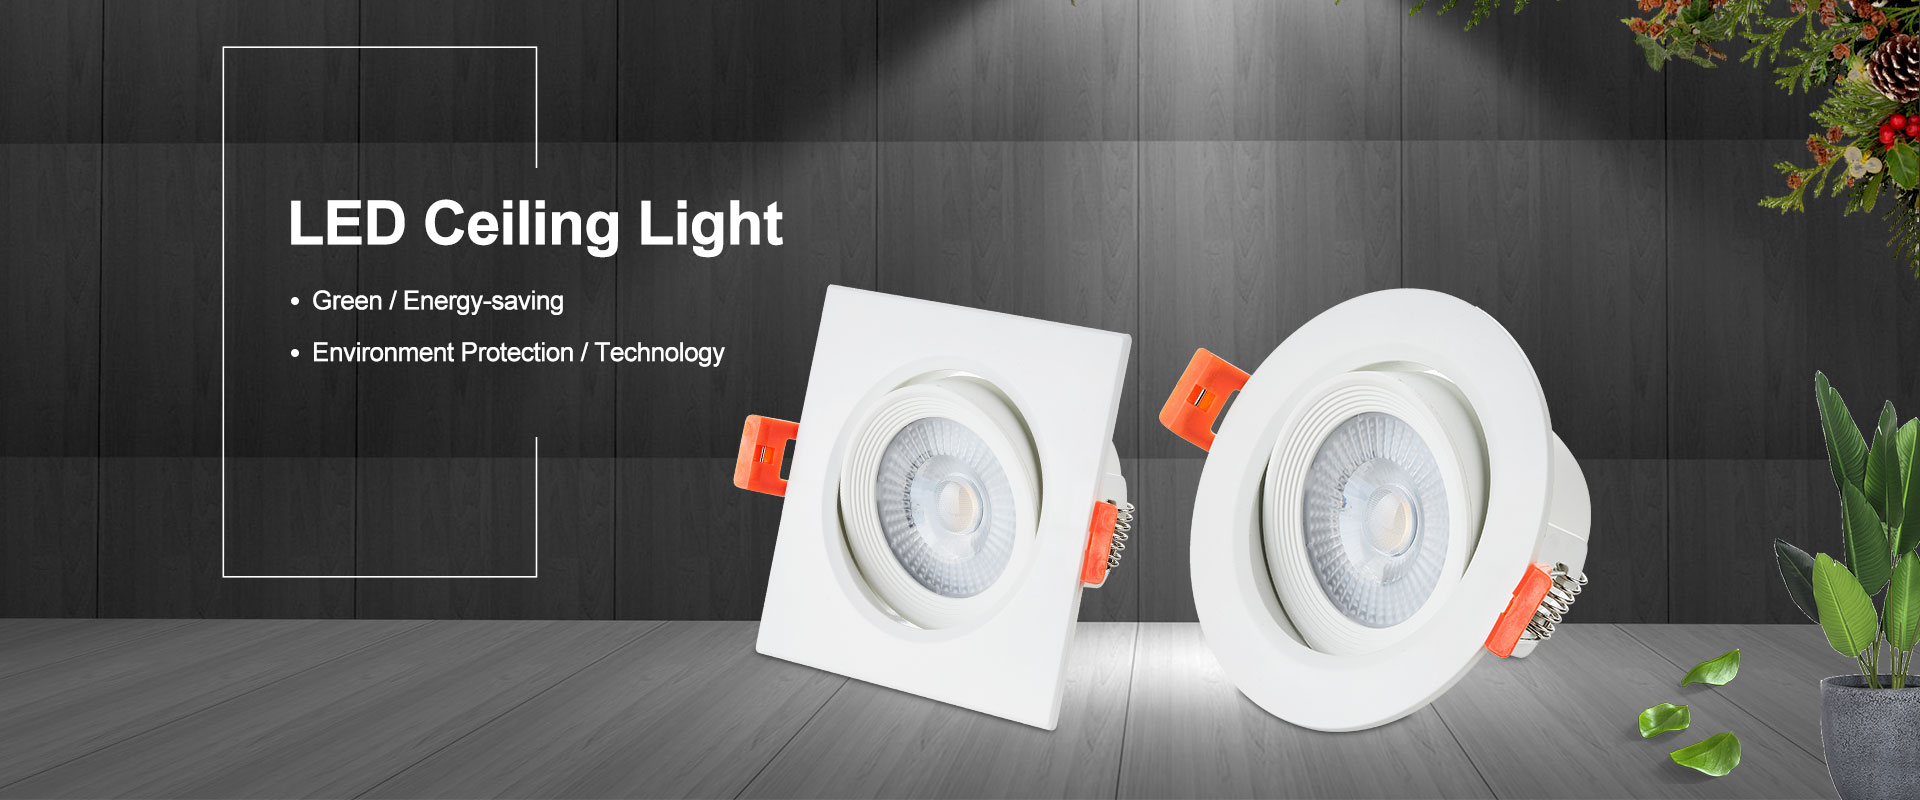 Kínai LED mennyezeti lámpák gyártói